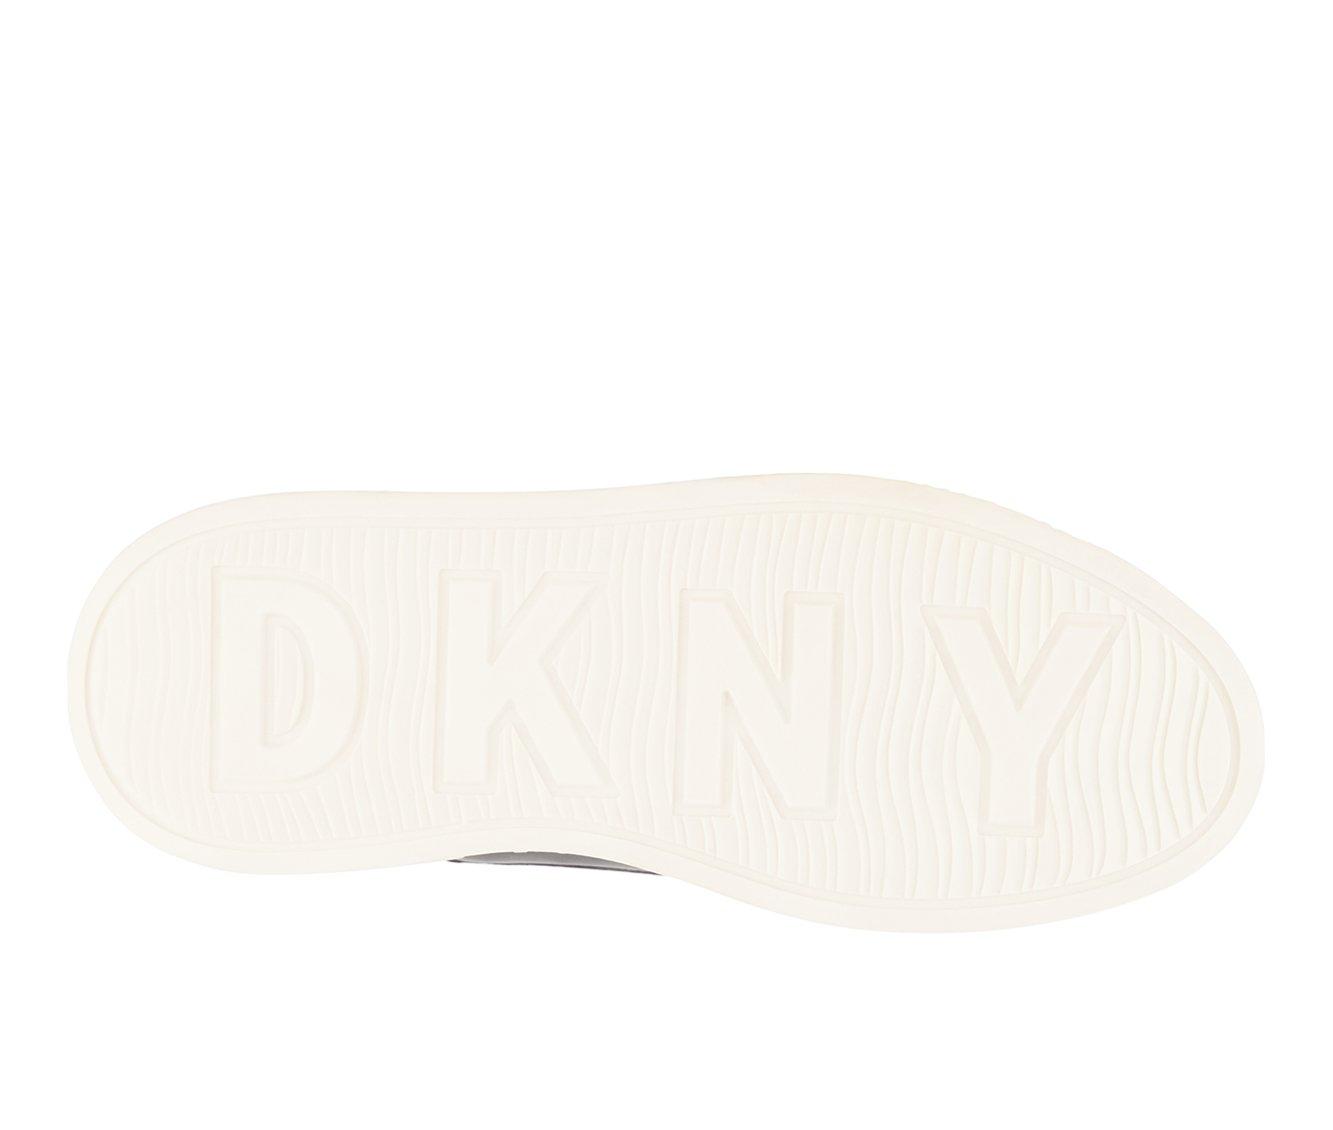 Girls' DKNY Little Kid & Big Kid Allie Viv Sneakers